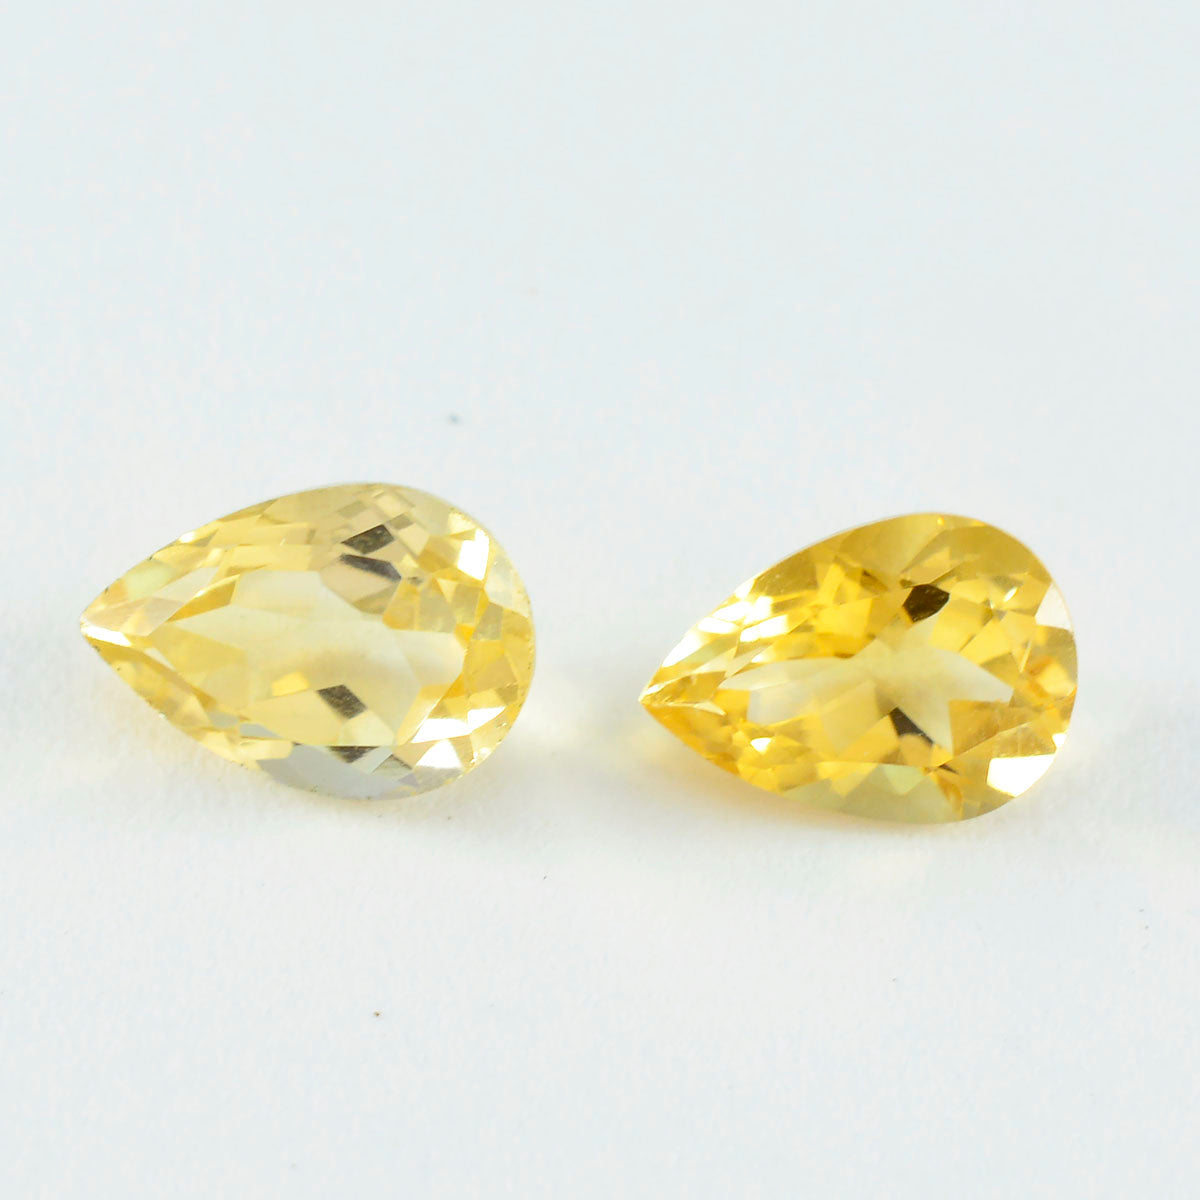 riyogems 1 шт. натуральный желтый цитрин ограненный 6x9 мм драгоценный камень грушевидной формы отличного качества